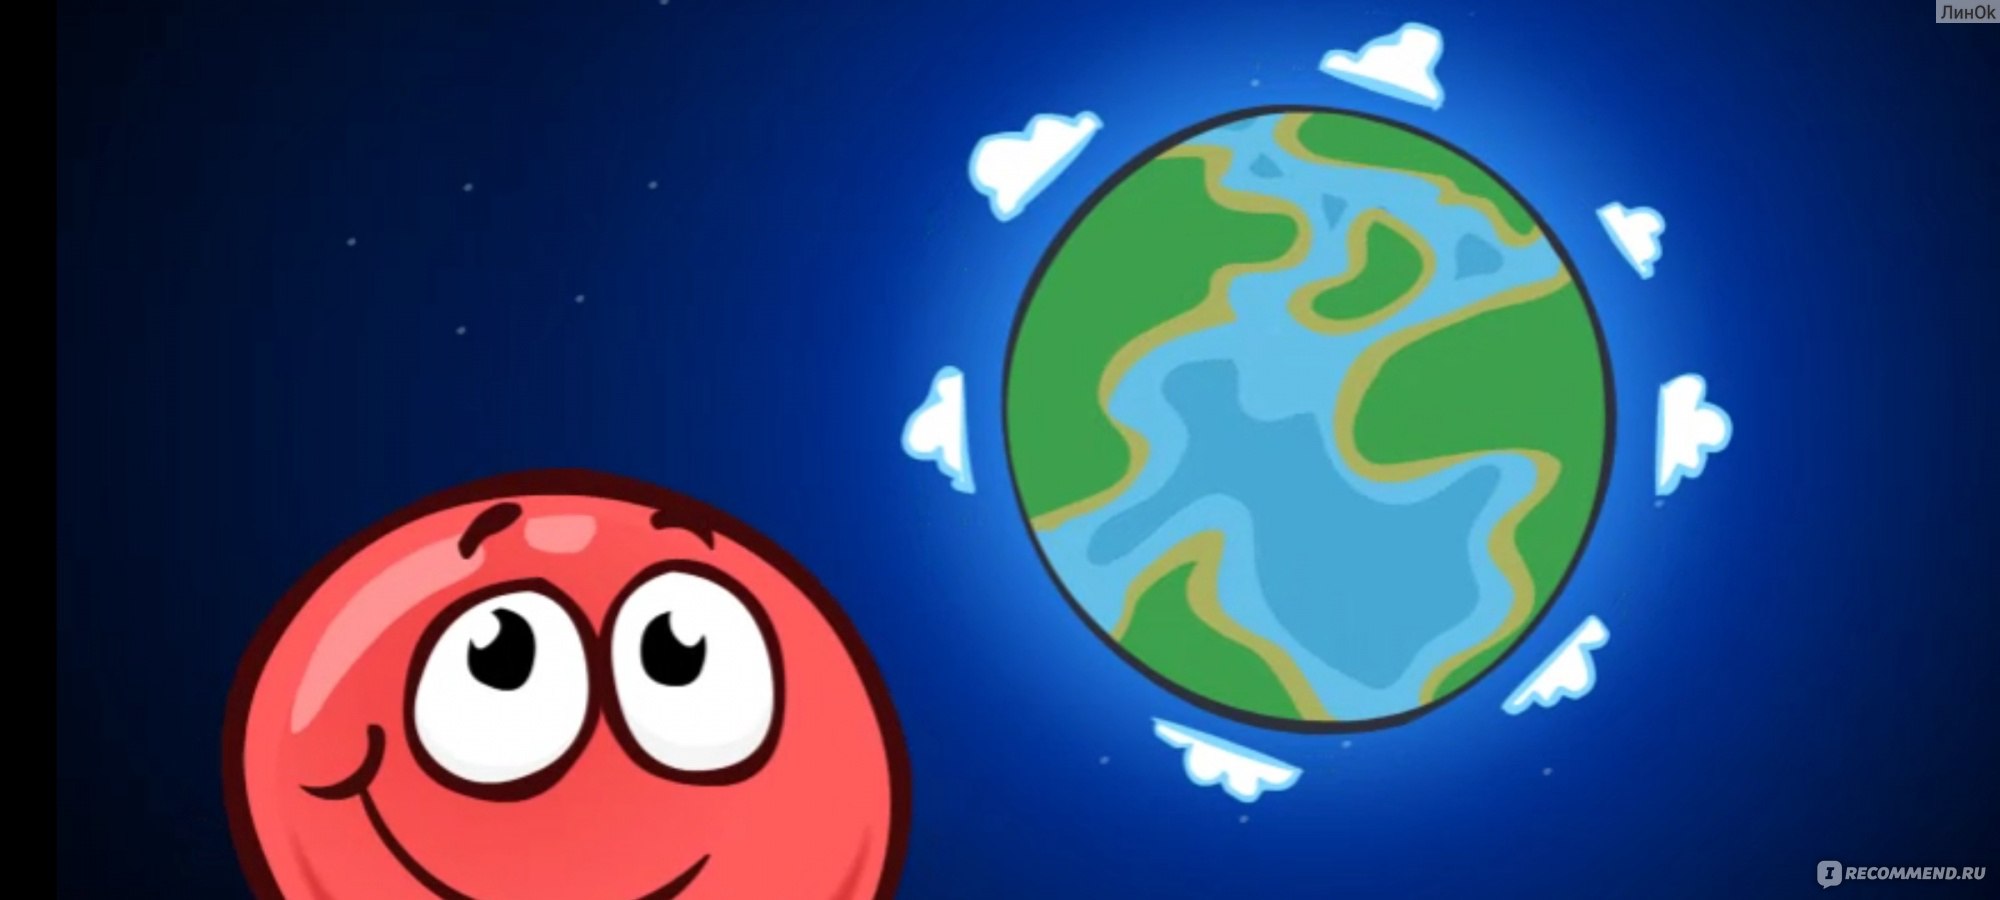 На круглой планете летает текст круглый ветер. Красный шарик квадратная земля. Ред бол 4 битва за луну. Спасти шарик. Игра красный шарик битва за луну.